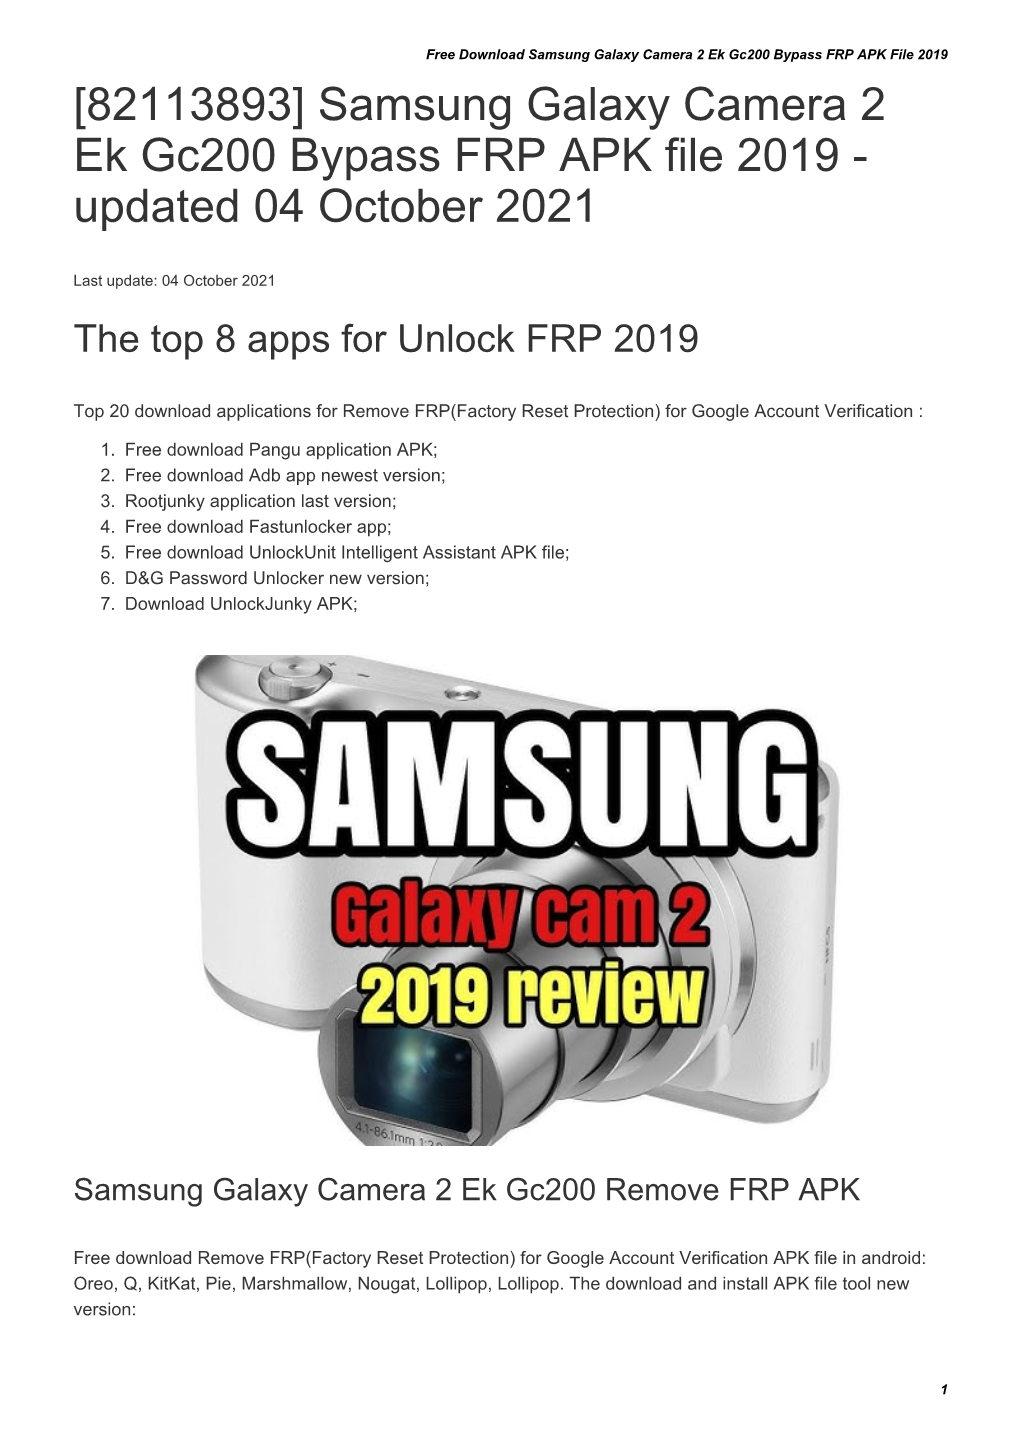 Samsung Galaxy Camera 2 Ek Gc200 Bypass FRP APK File 2019 [82113893] Samsung Galaxy Camera 2 Ek Gc200 Bypass FRP APK File 2019 - Updated 04 October 2021